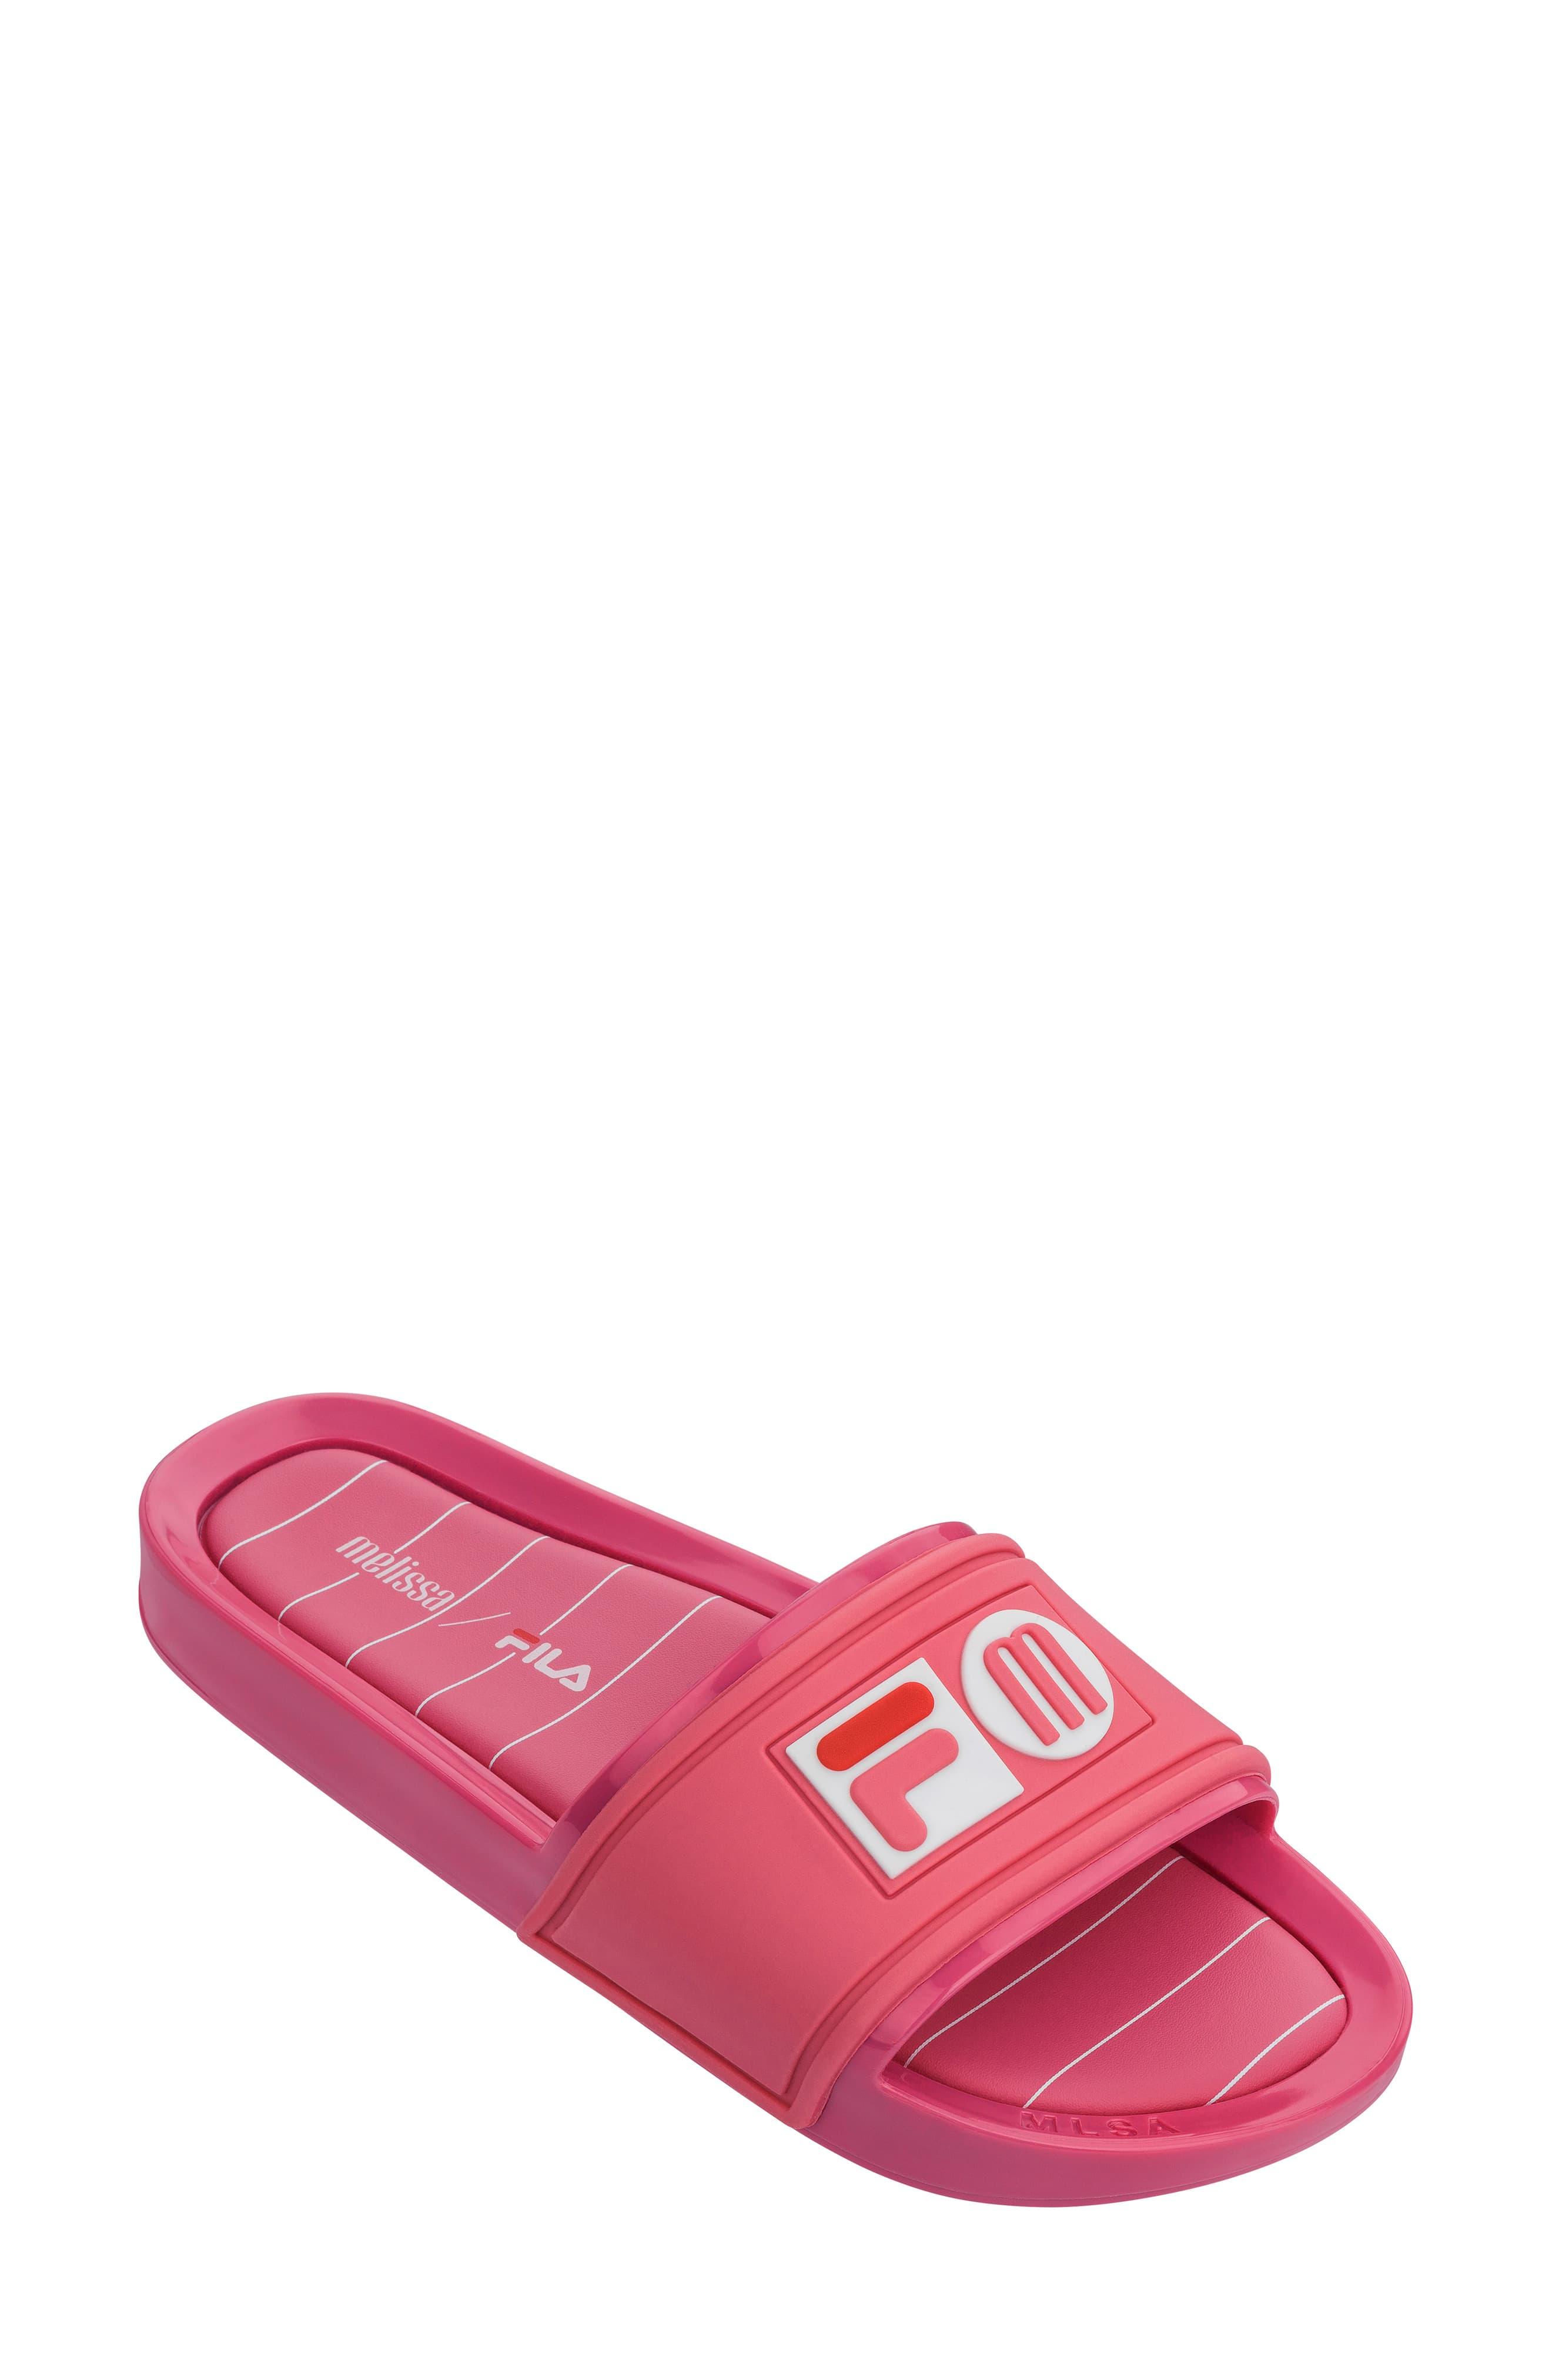 Melissa X Fila Sport Slide in Pink - Lyst